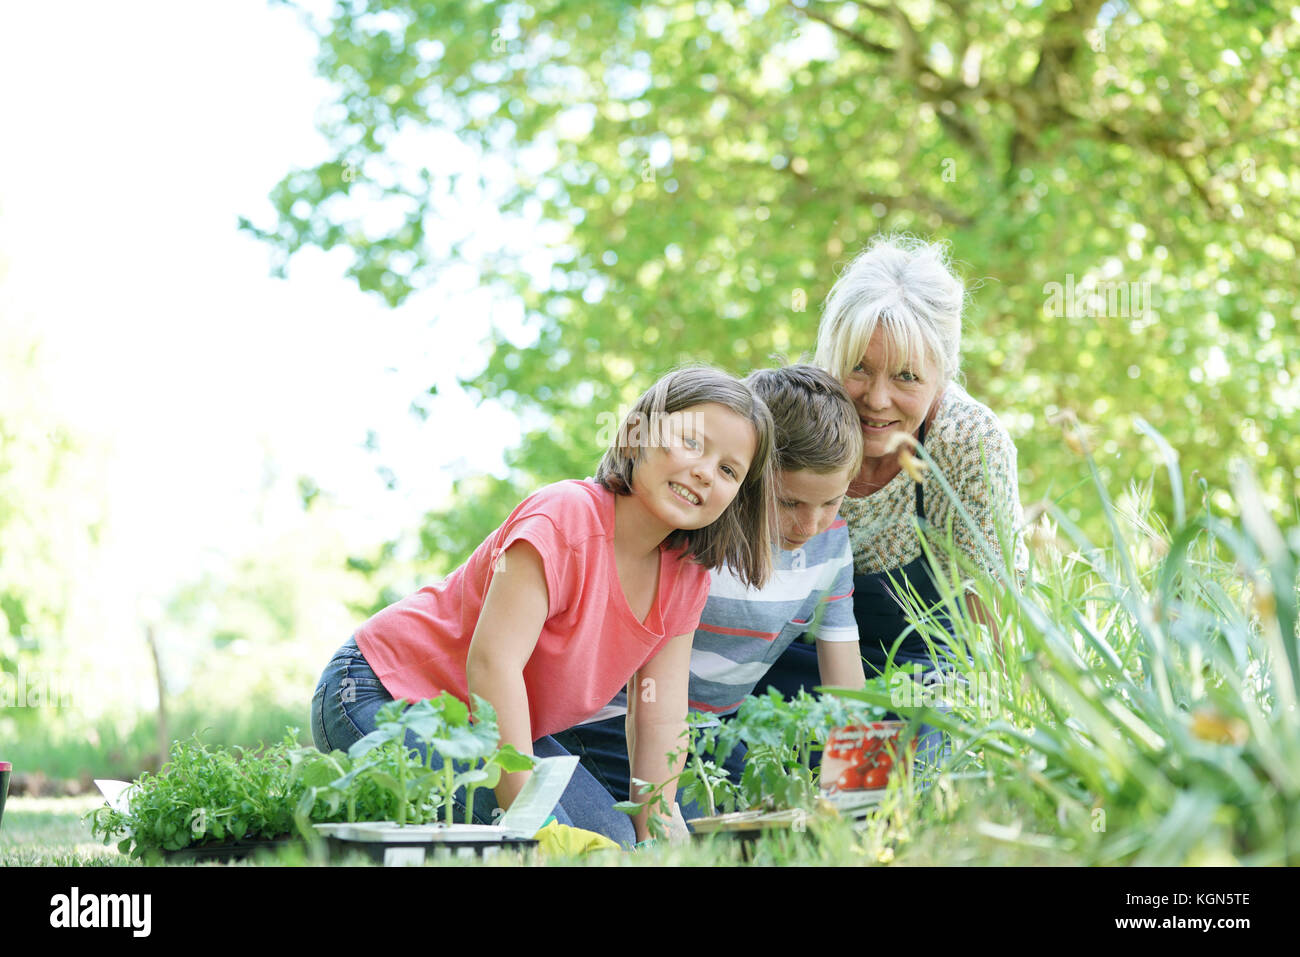 Ältere Frau Spaß im Garten mit den Enkelkindern Stockfotografie - Alamy.